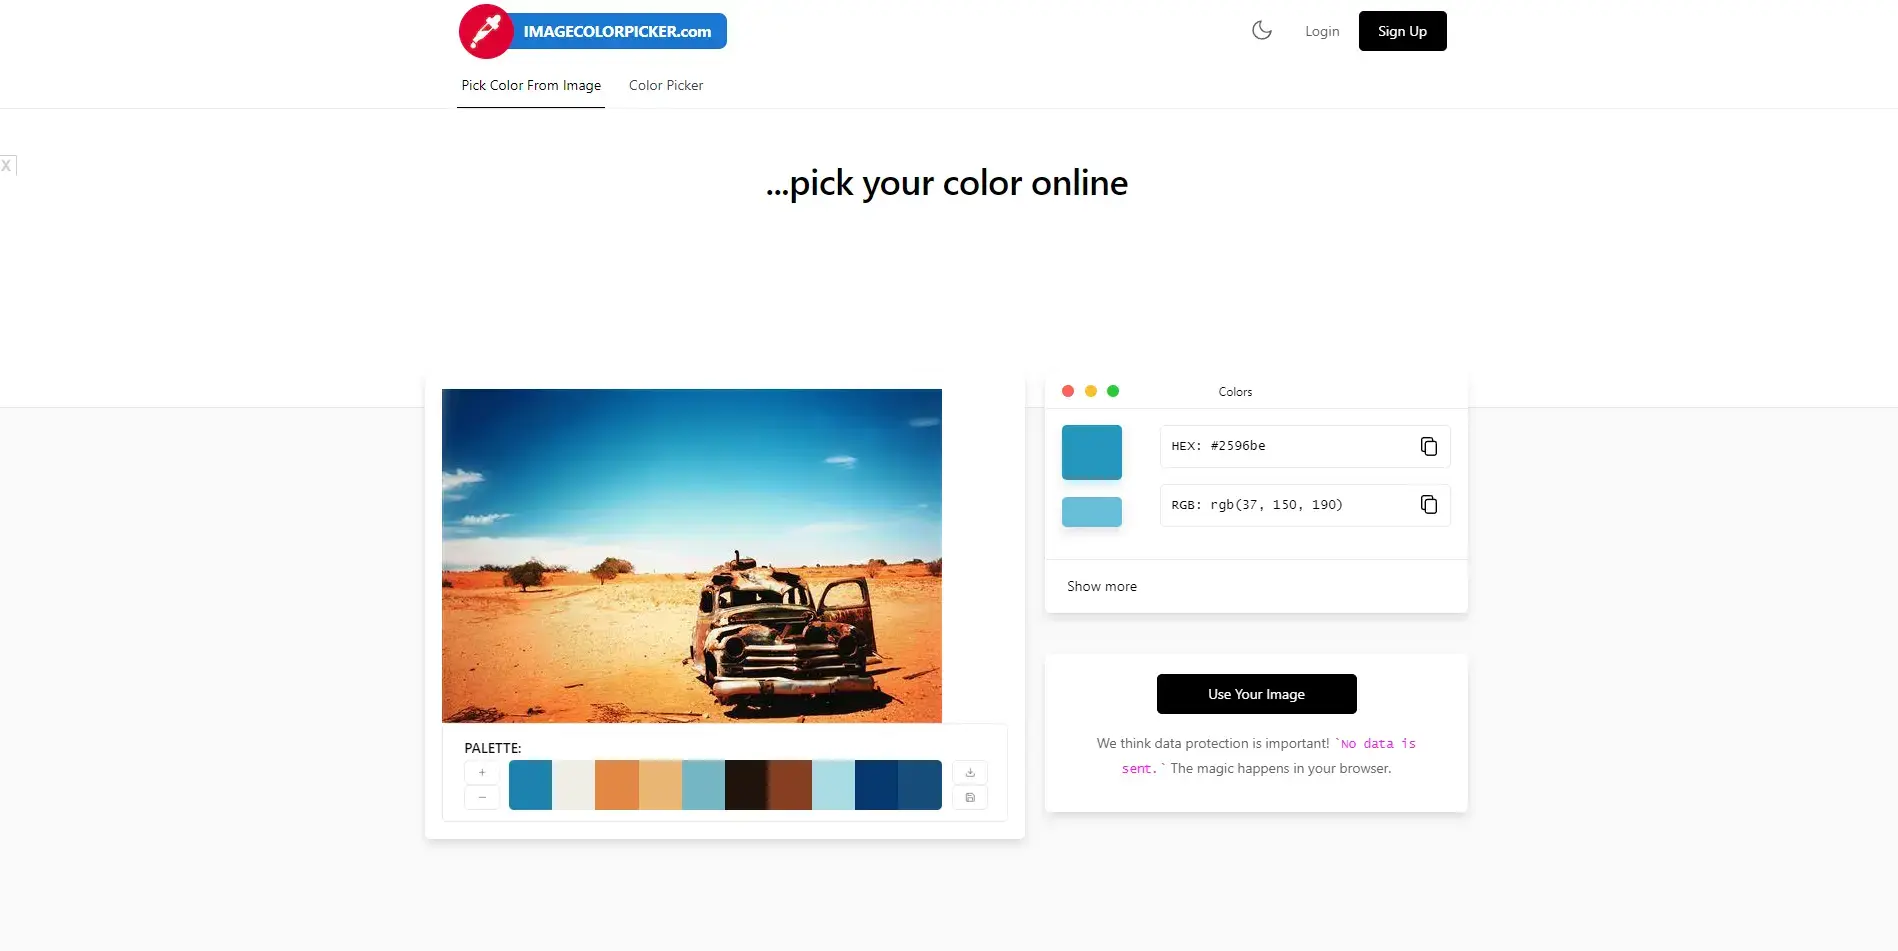 Blogduwebdesign outils design generateurs palettes couleurs en ligne image color picker